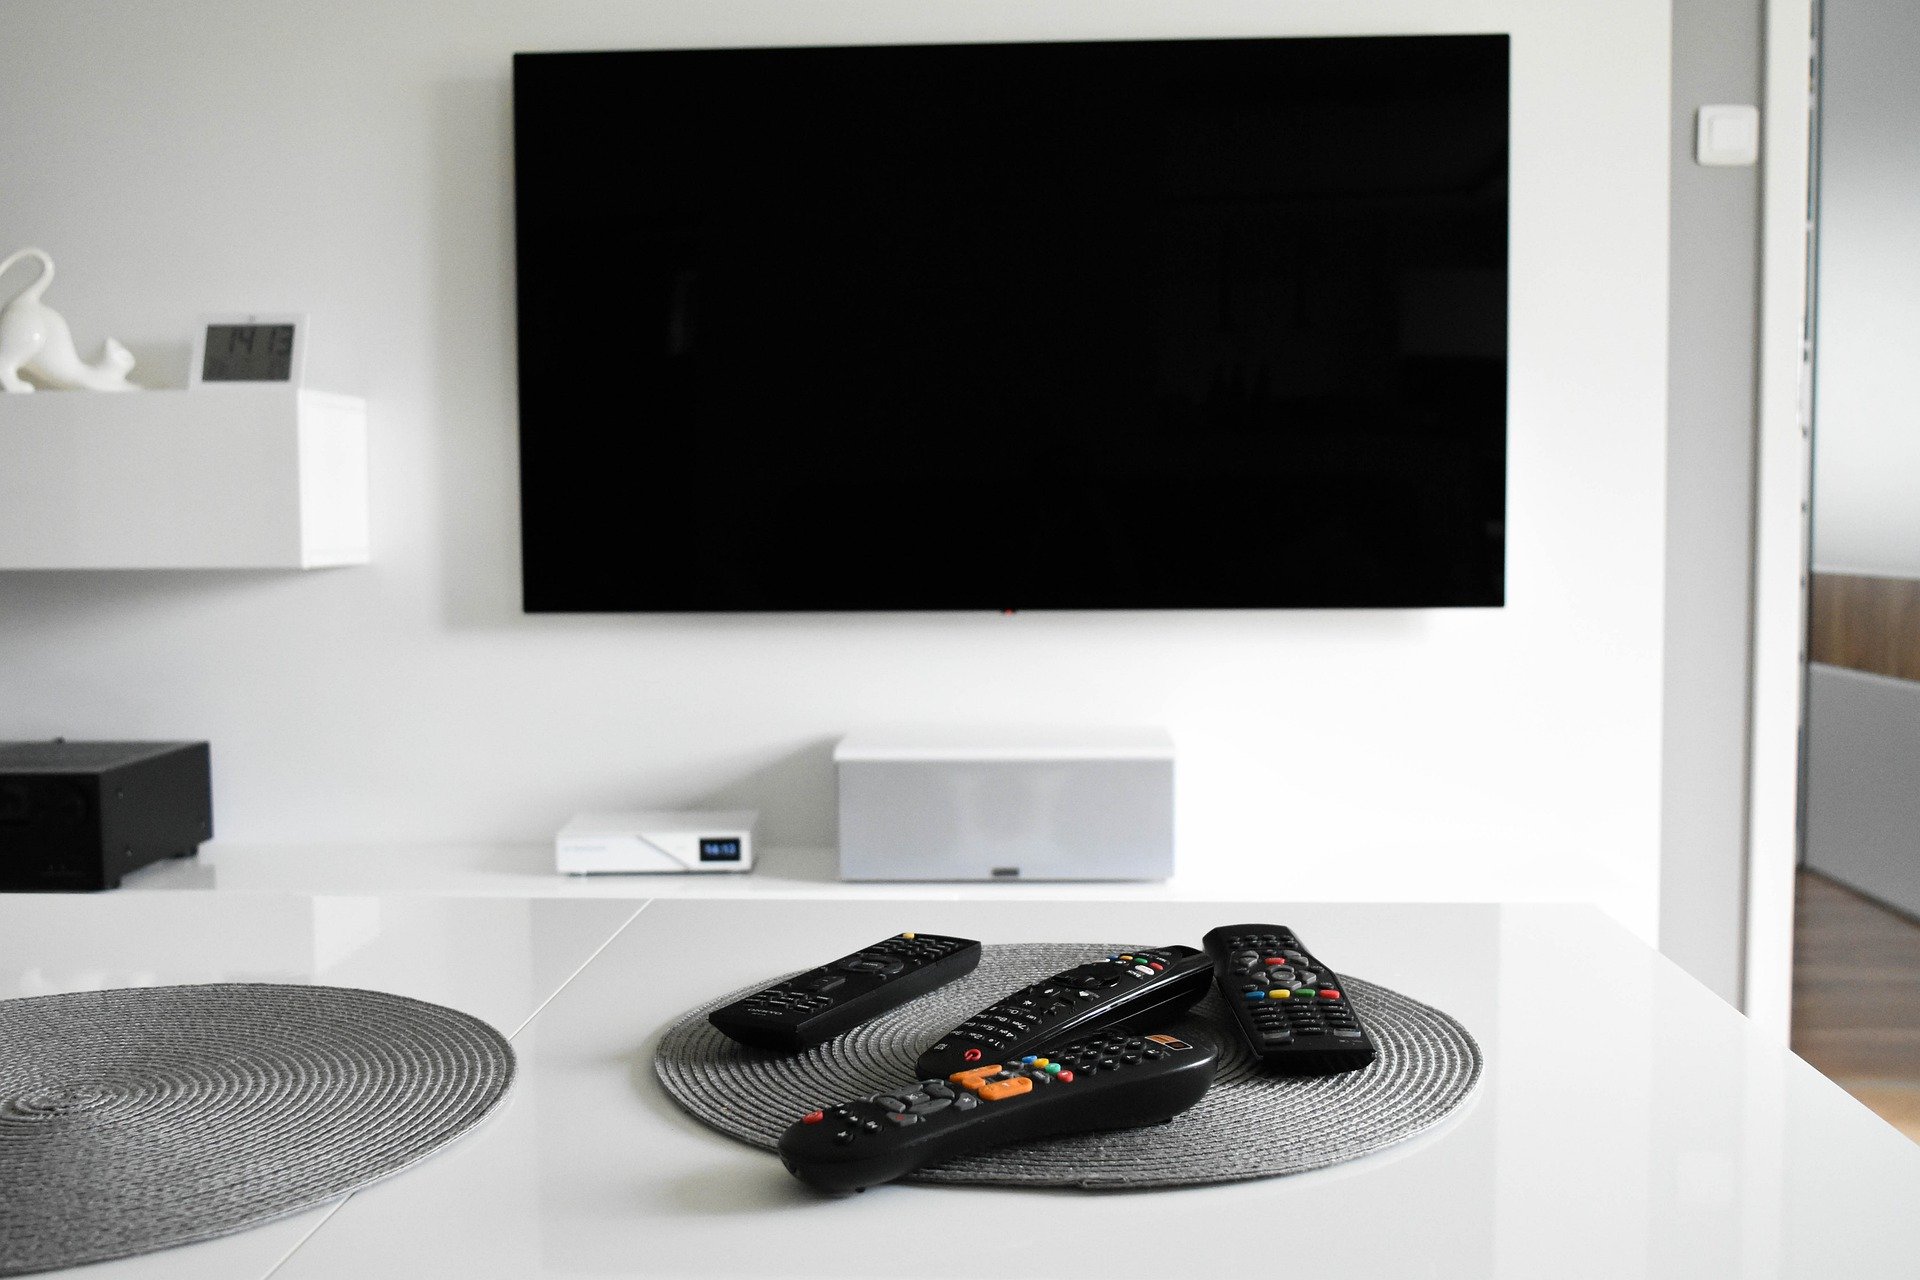 Nowy standard TV naziemnej już niedługo. Jak otrzymać bon na dekoder lub telewizor?